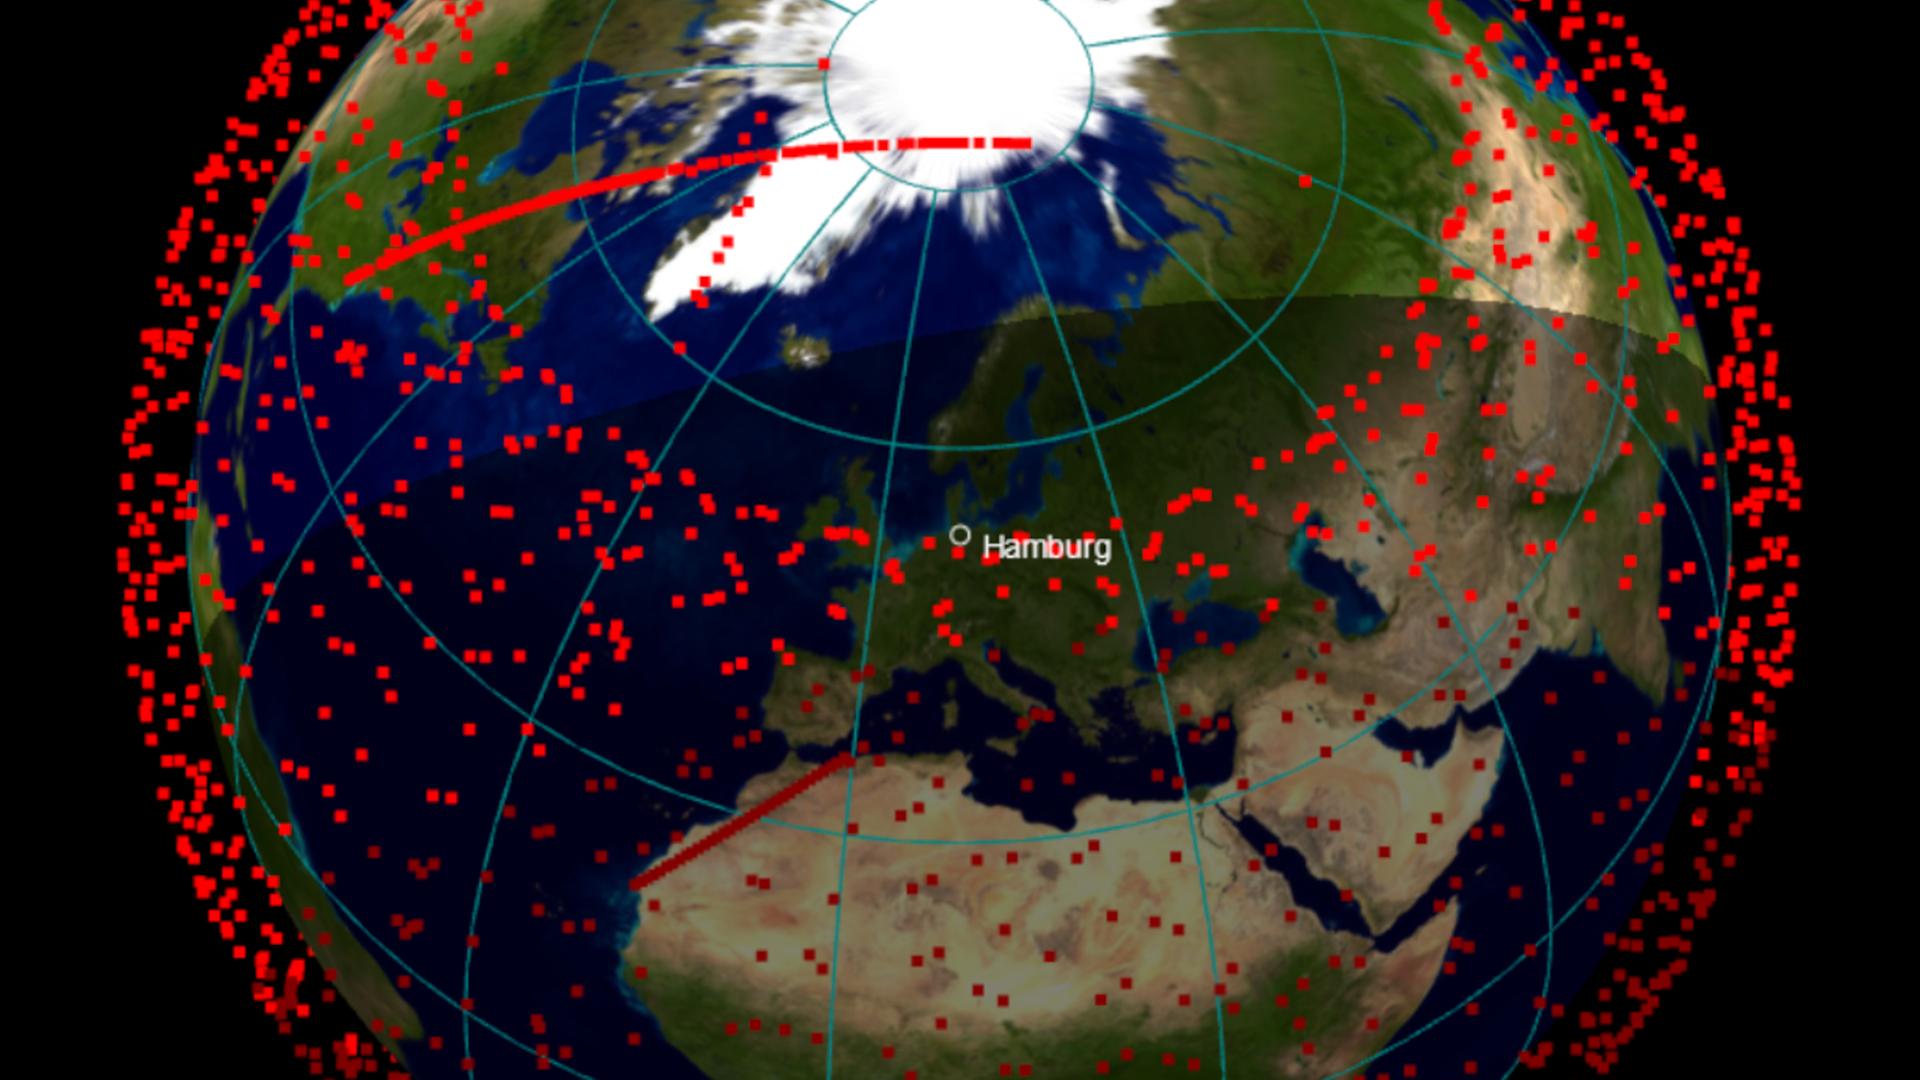 Jeder roter Punkt ein Starlink-Satellit! Momentaufnahme der über 2000 Satelliten am 20. Juli 2022